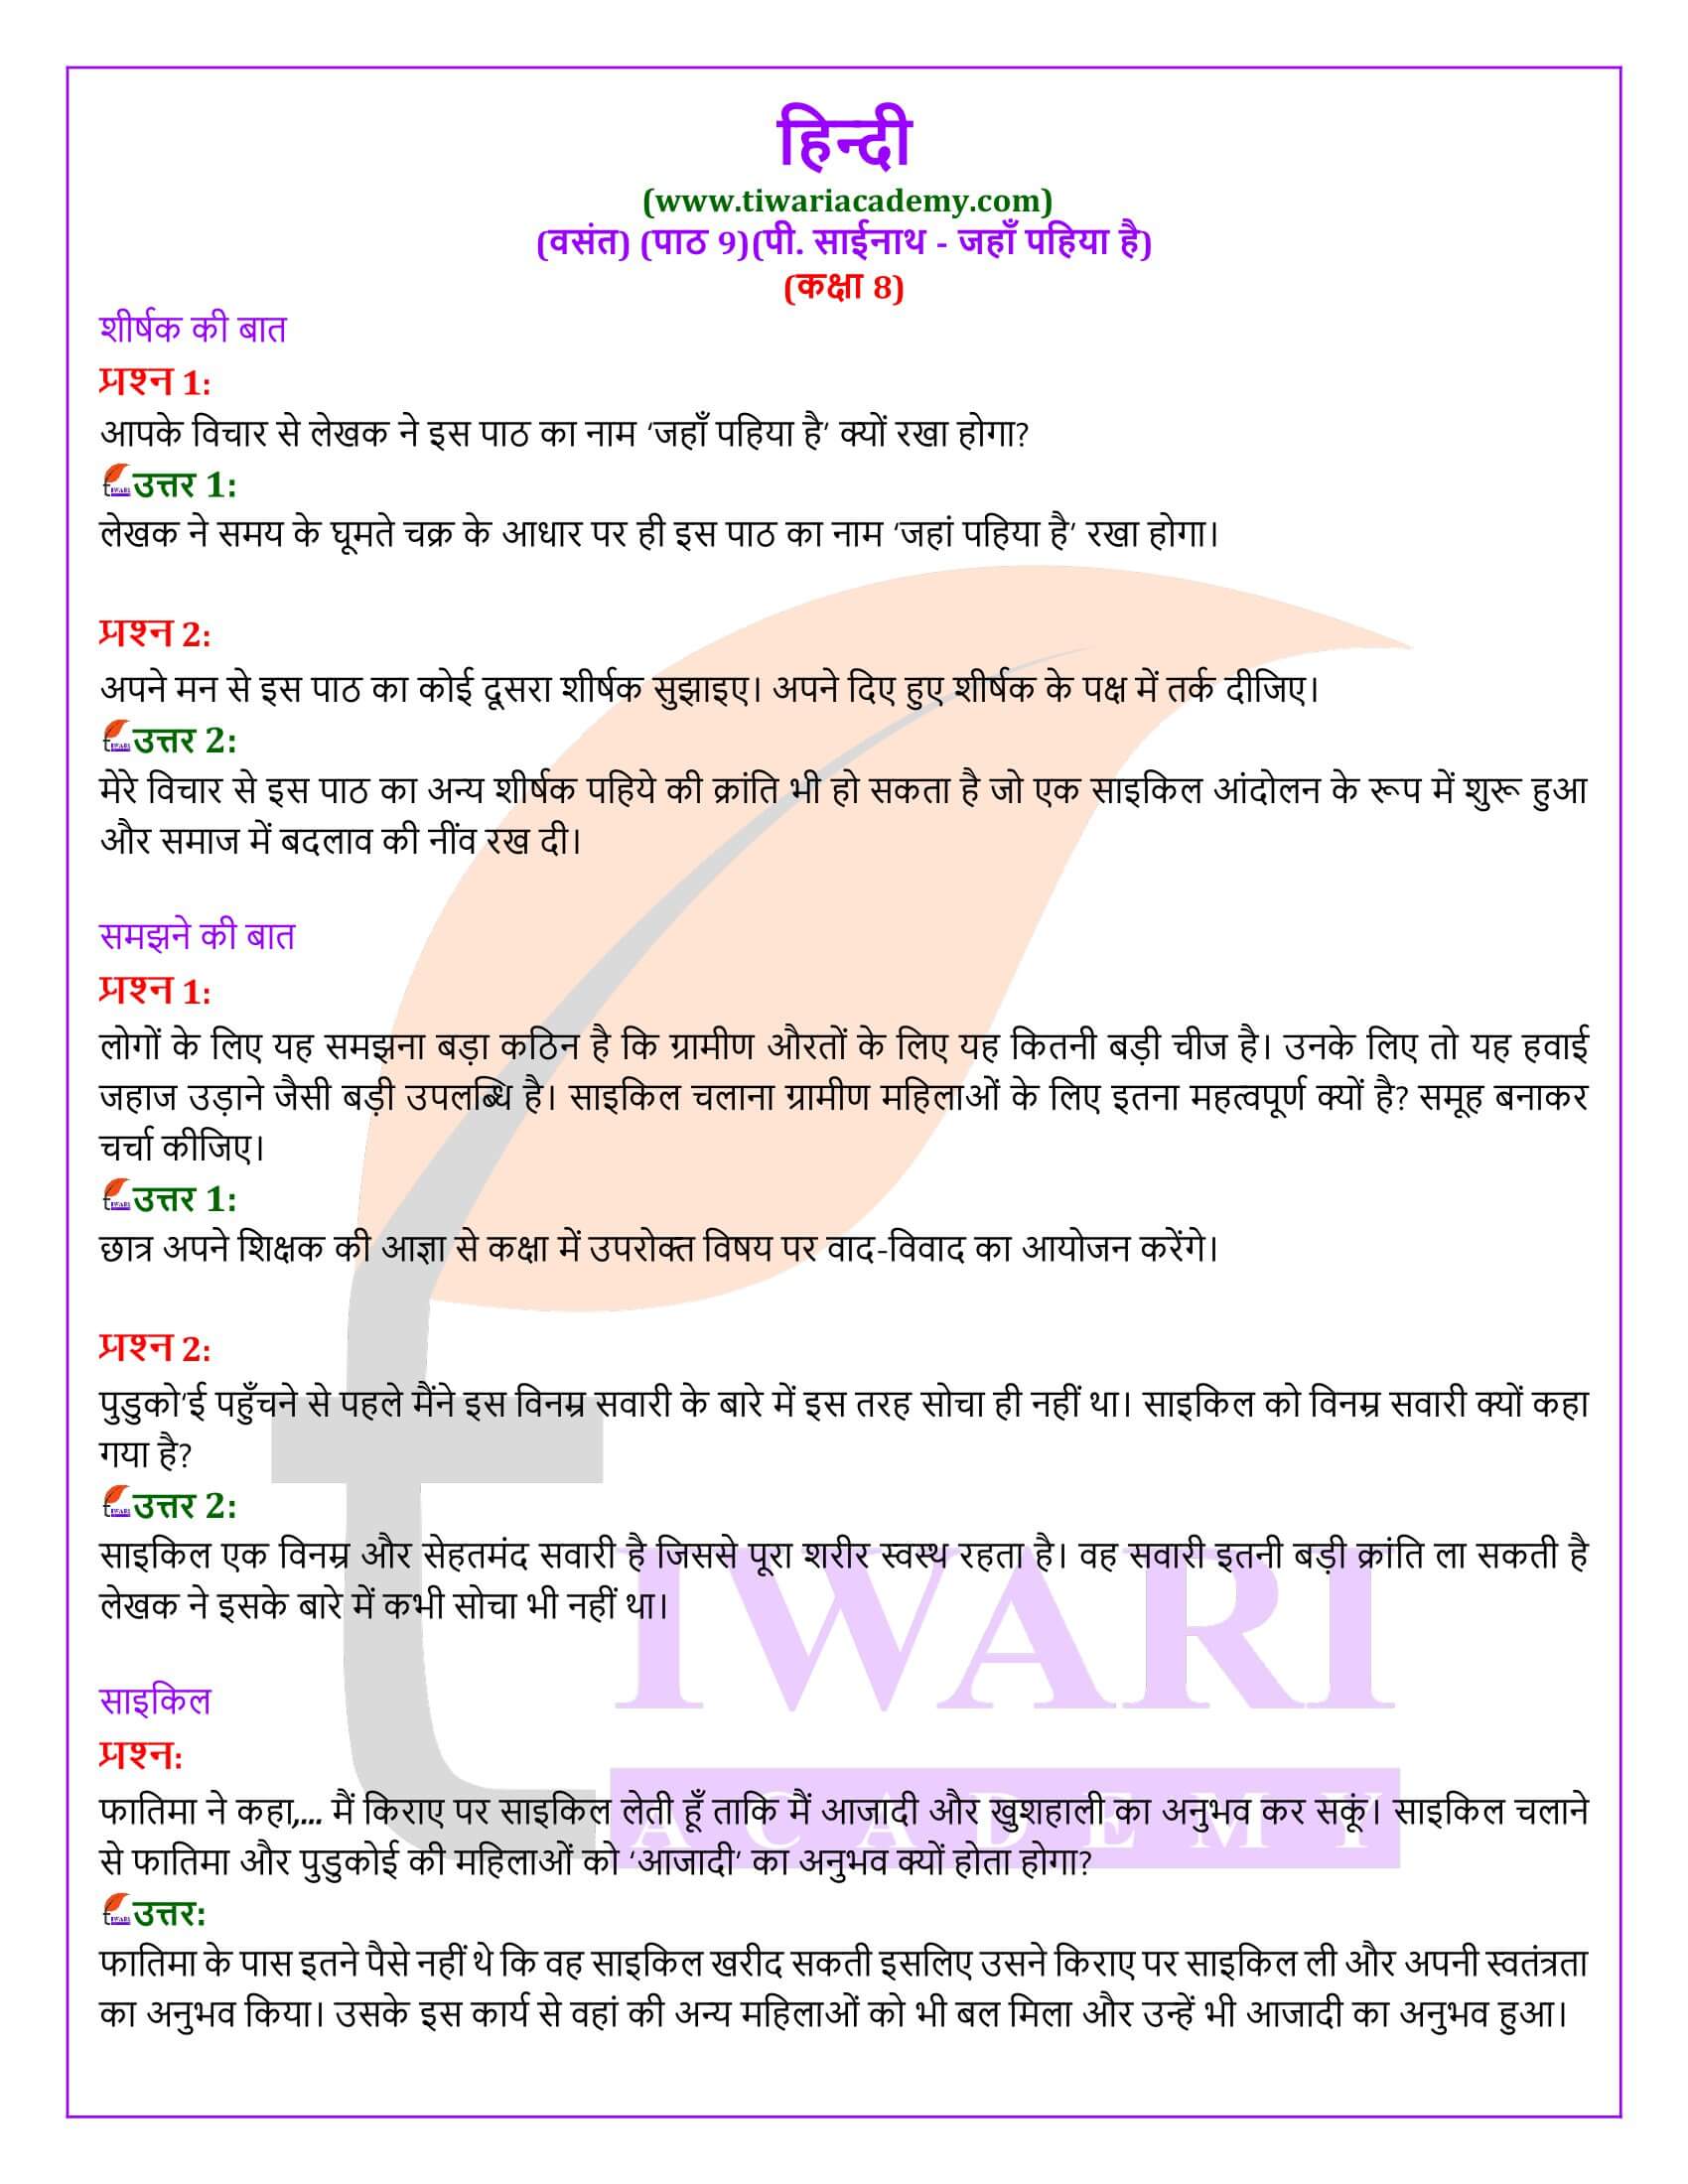 कक्षा 8 हिंदी वसंत अध्याय 9 जहाँ पहिया है